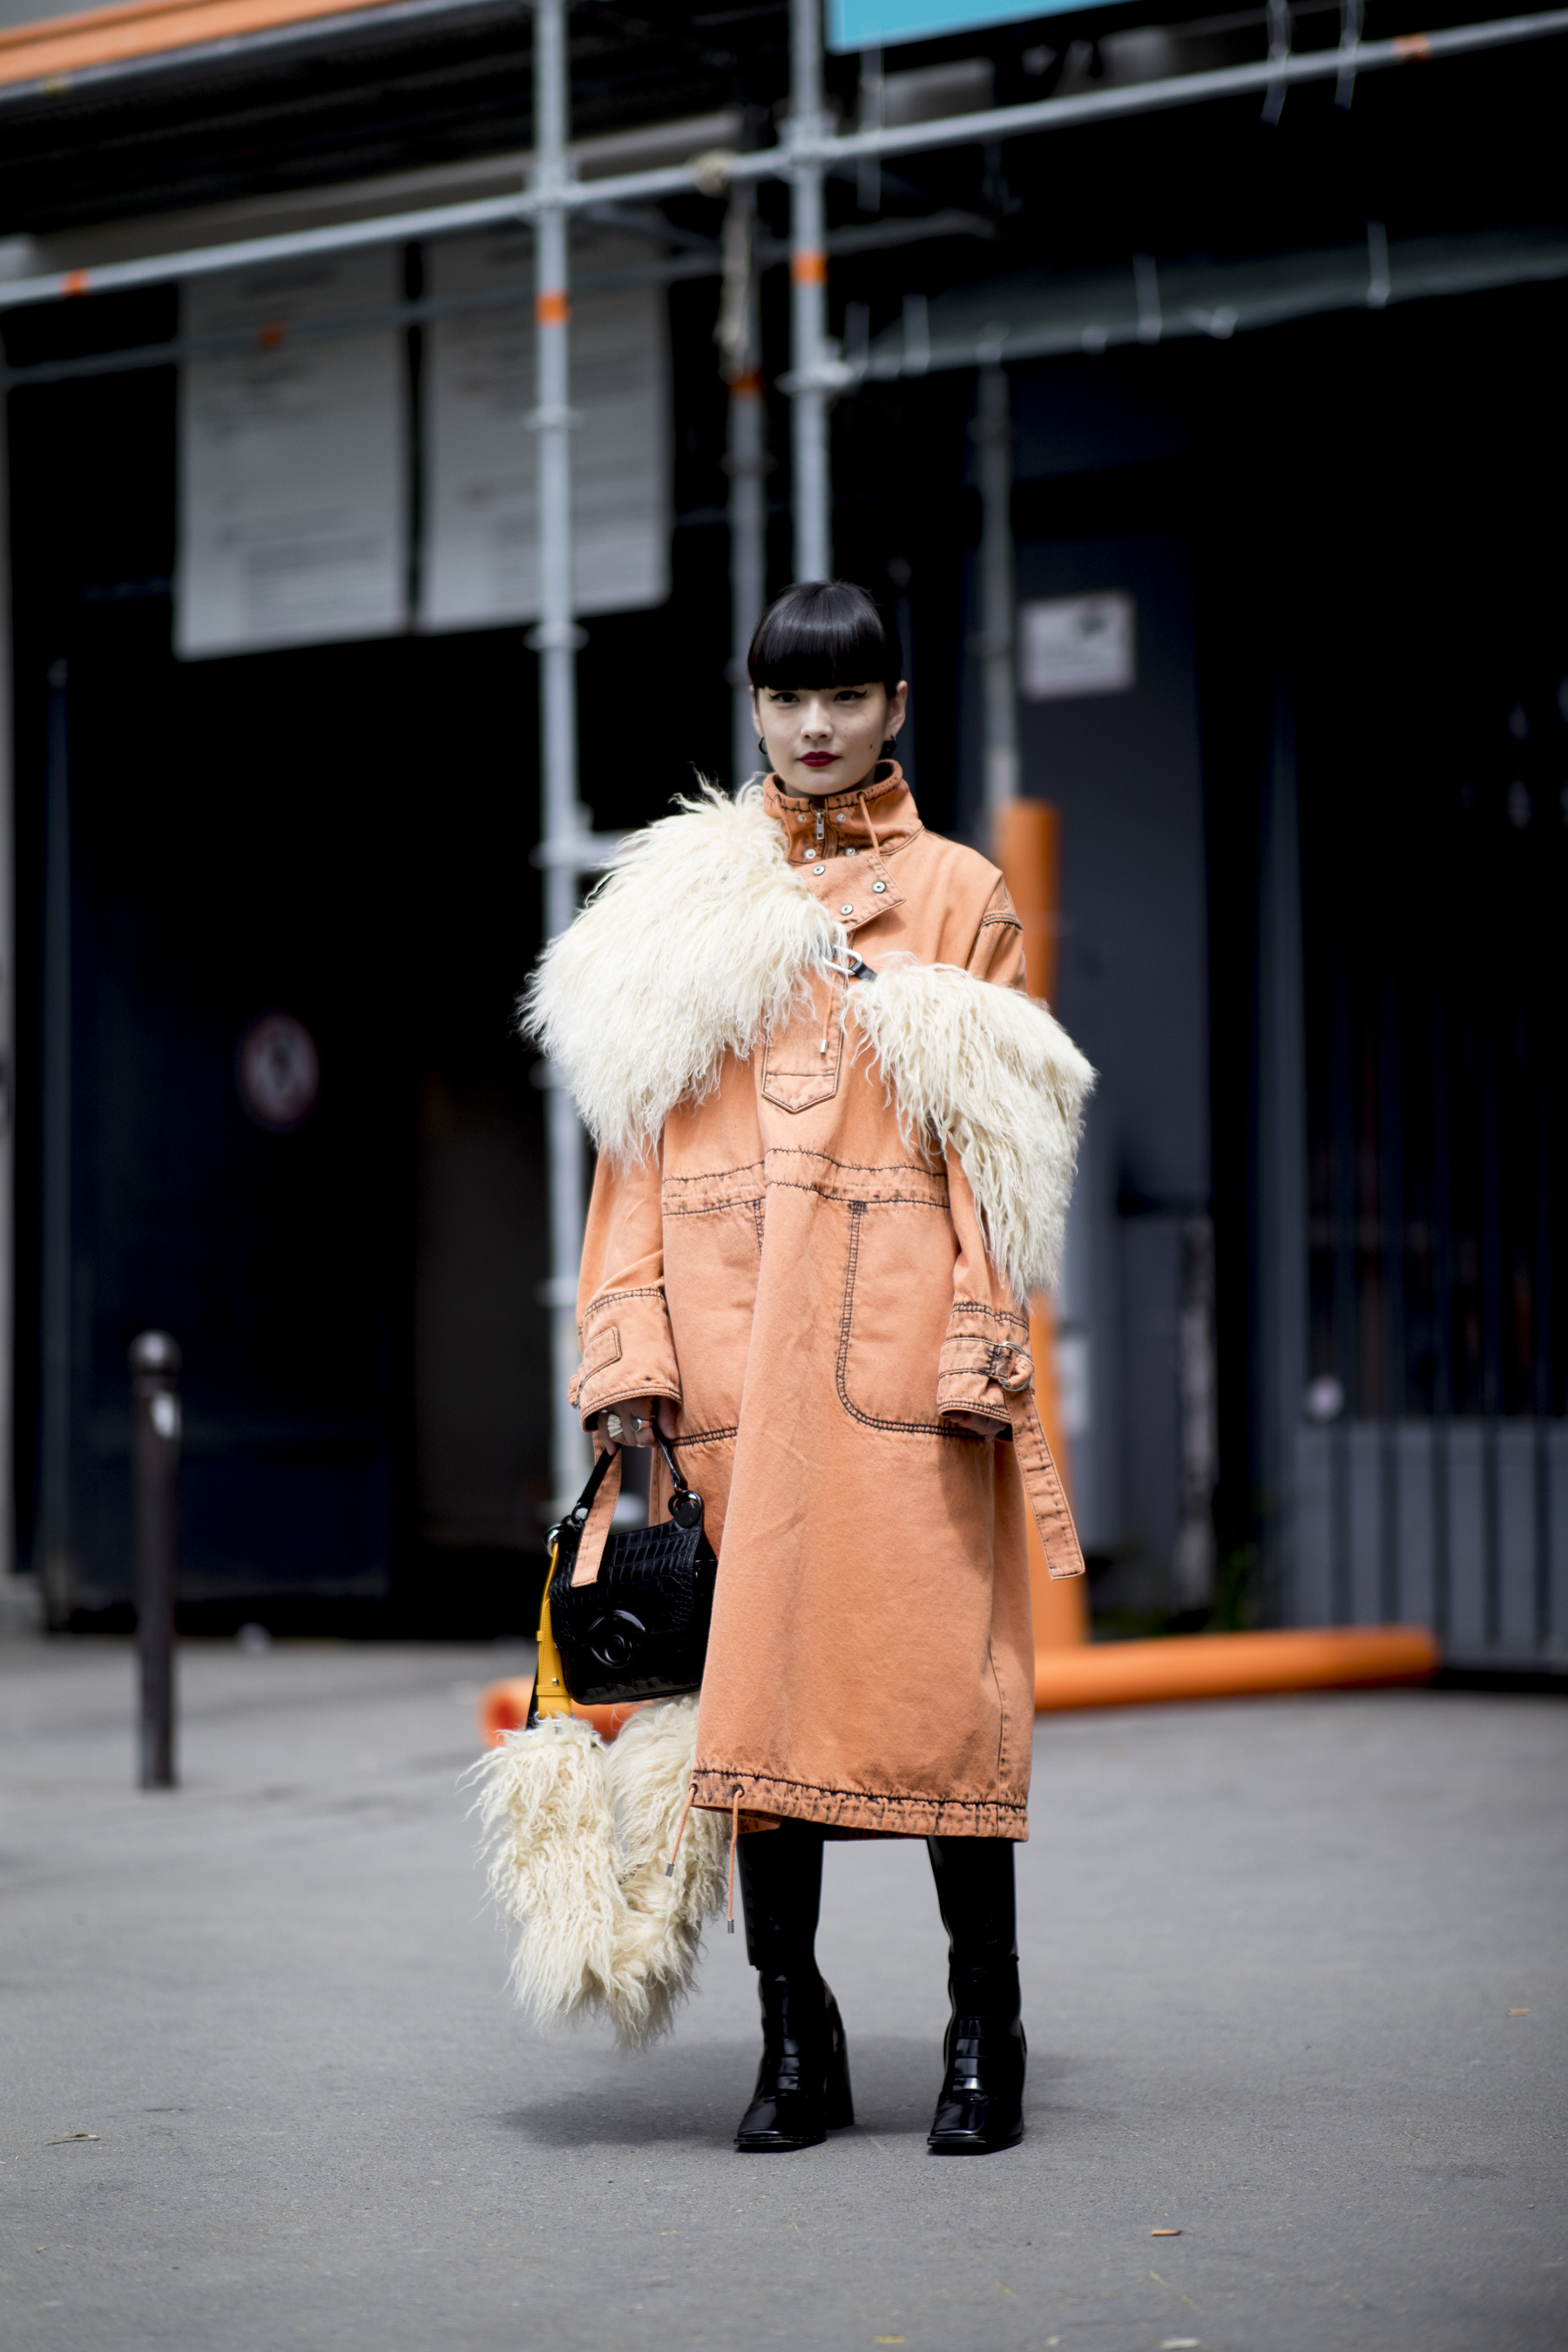 54+ Winter Outfit Ideas From Copenhagen Fashion Week Street Style